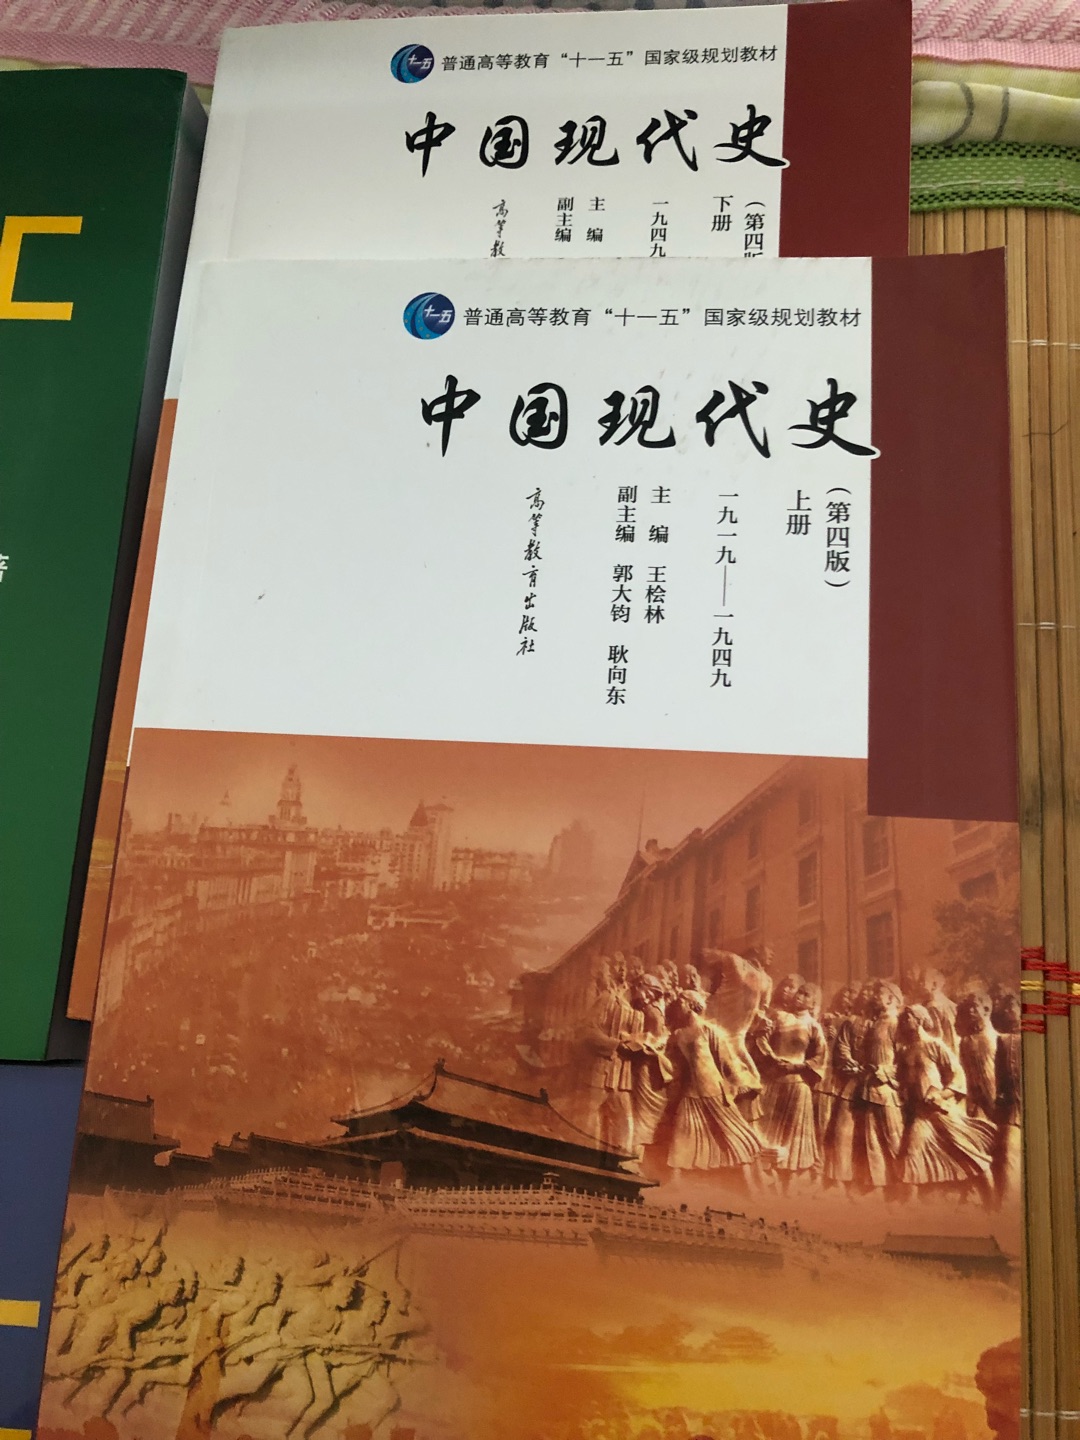 书收到了，快递很快，服务很棒，，质量还可以，中国现代史还是得了解一下的。